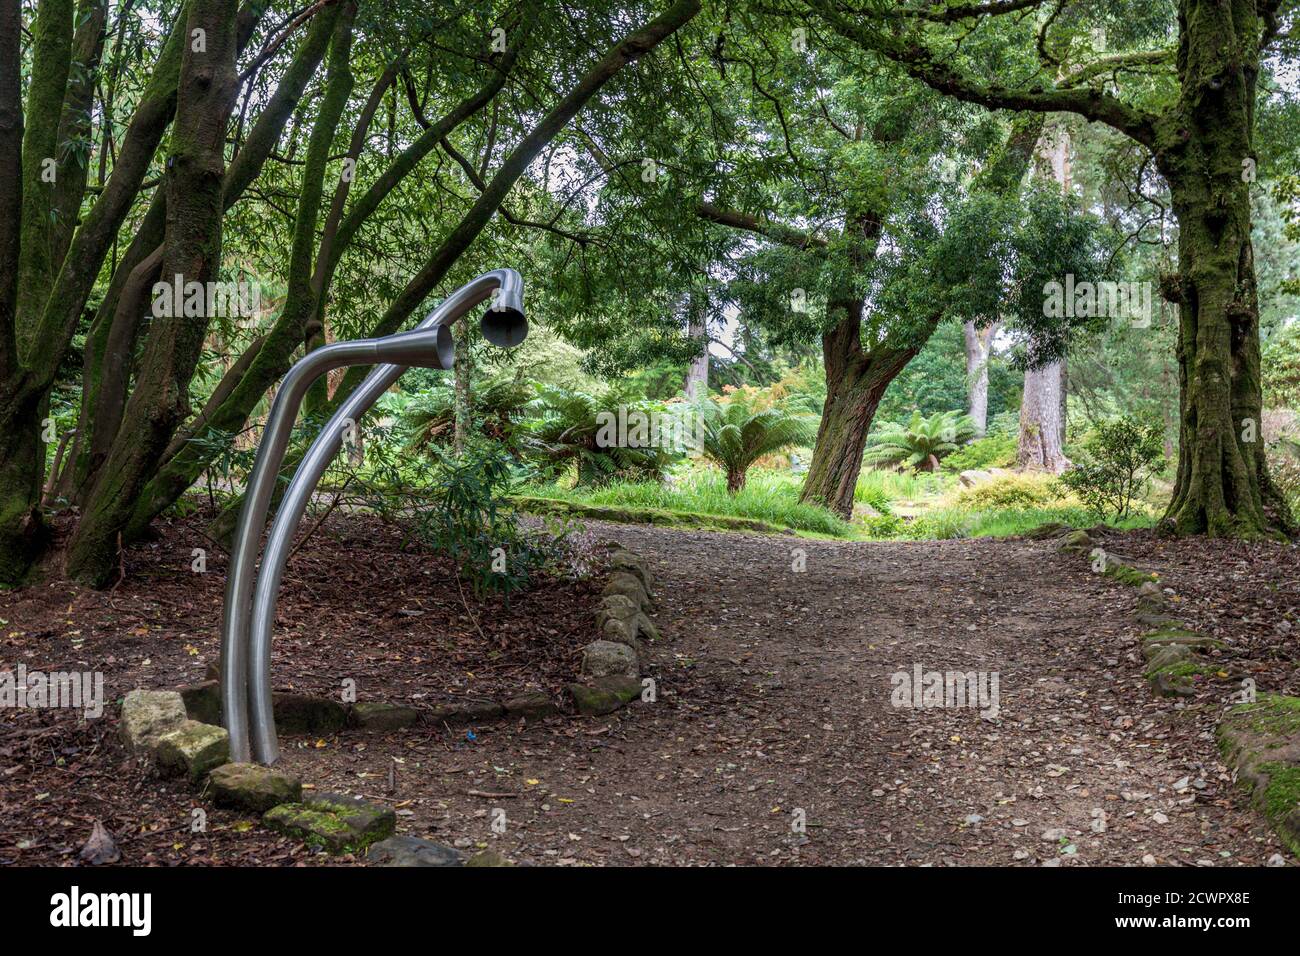 La sculpture tube argentée, qui fait partie d'une installation d'art sur le thème de l'argent, est située dans le domaine du château de Brodick, sur l'île d'Arran, en Écosse. Banque D'Images